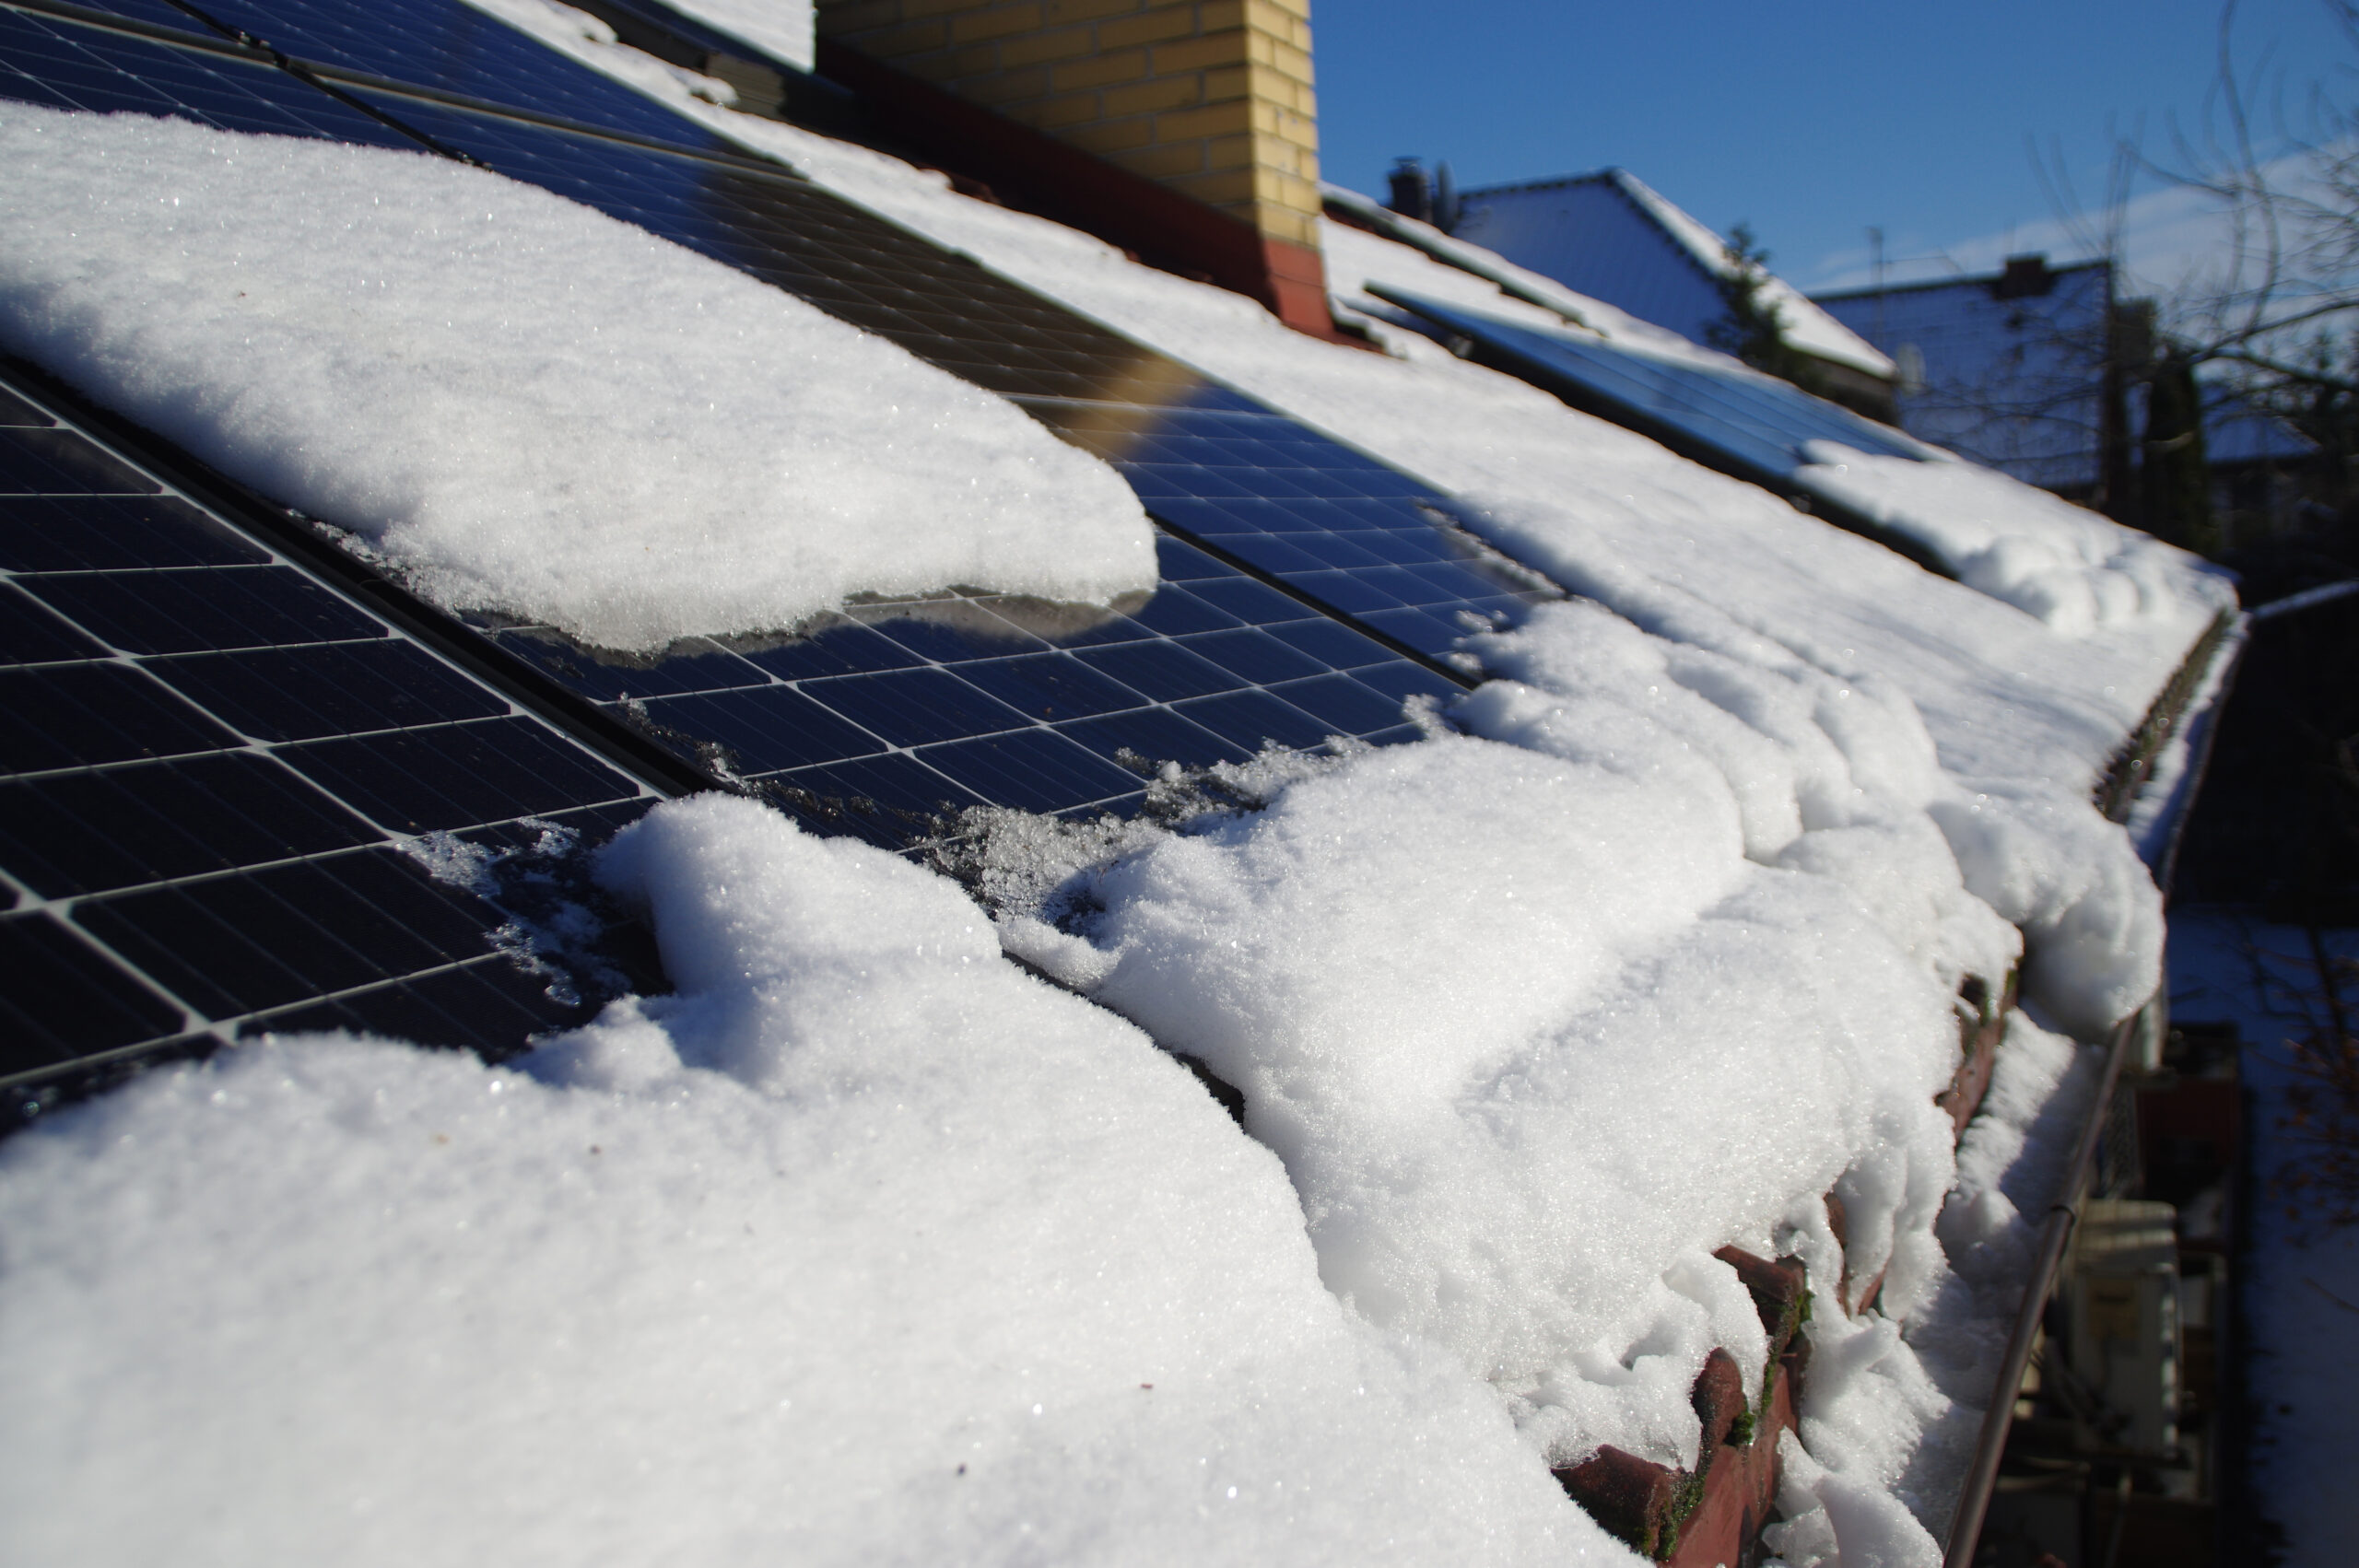 Prévention des problèmes de glace et de neige sur votre toiture : conseils pratiques